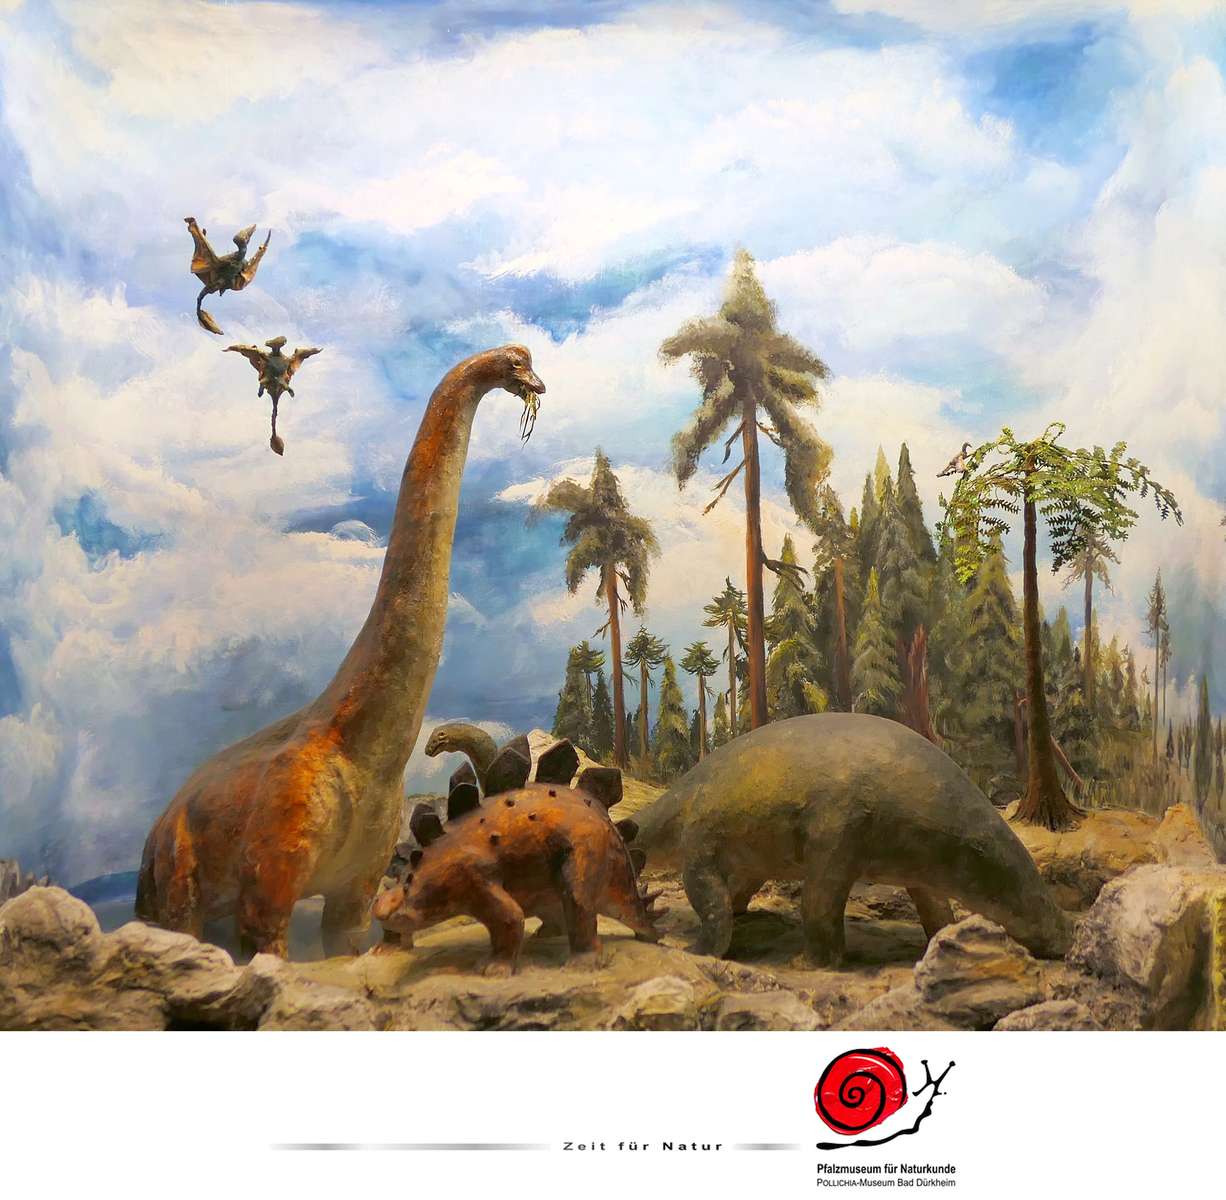 Jurští dinosauři puzzle online z fotografie